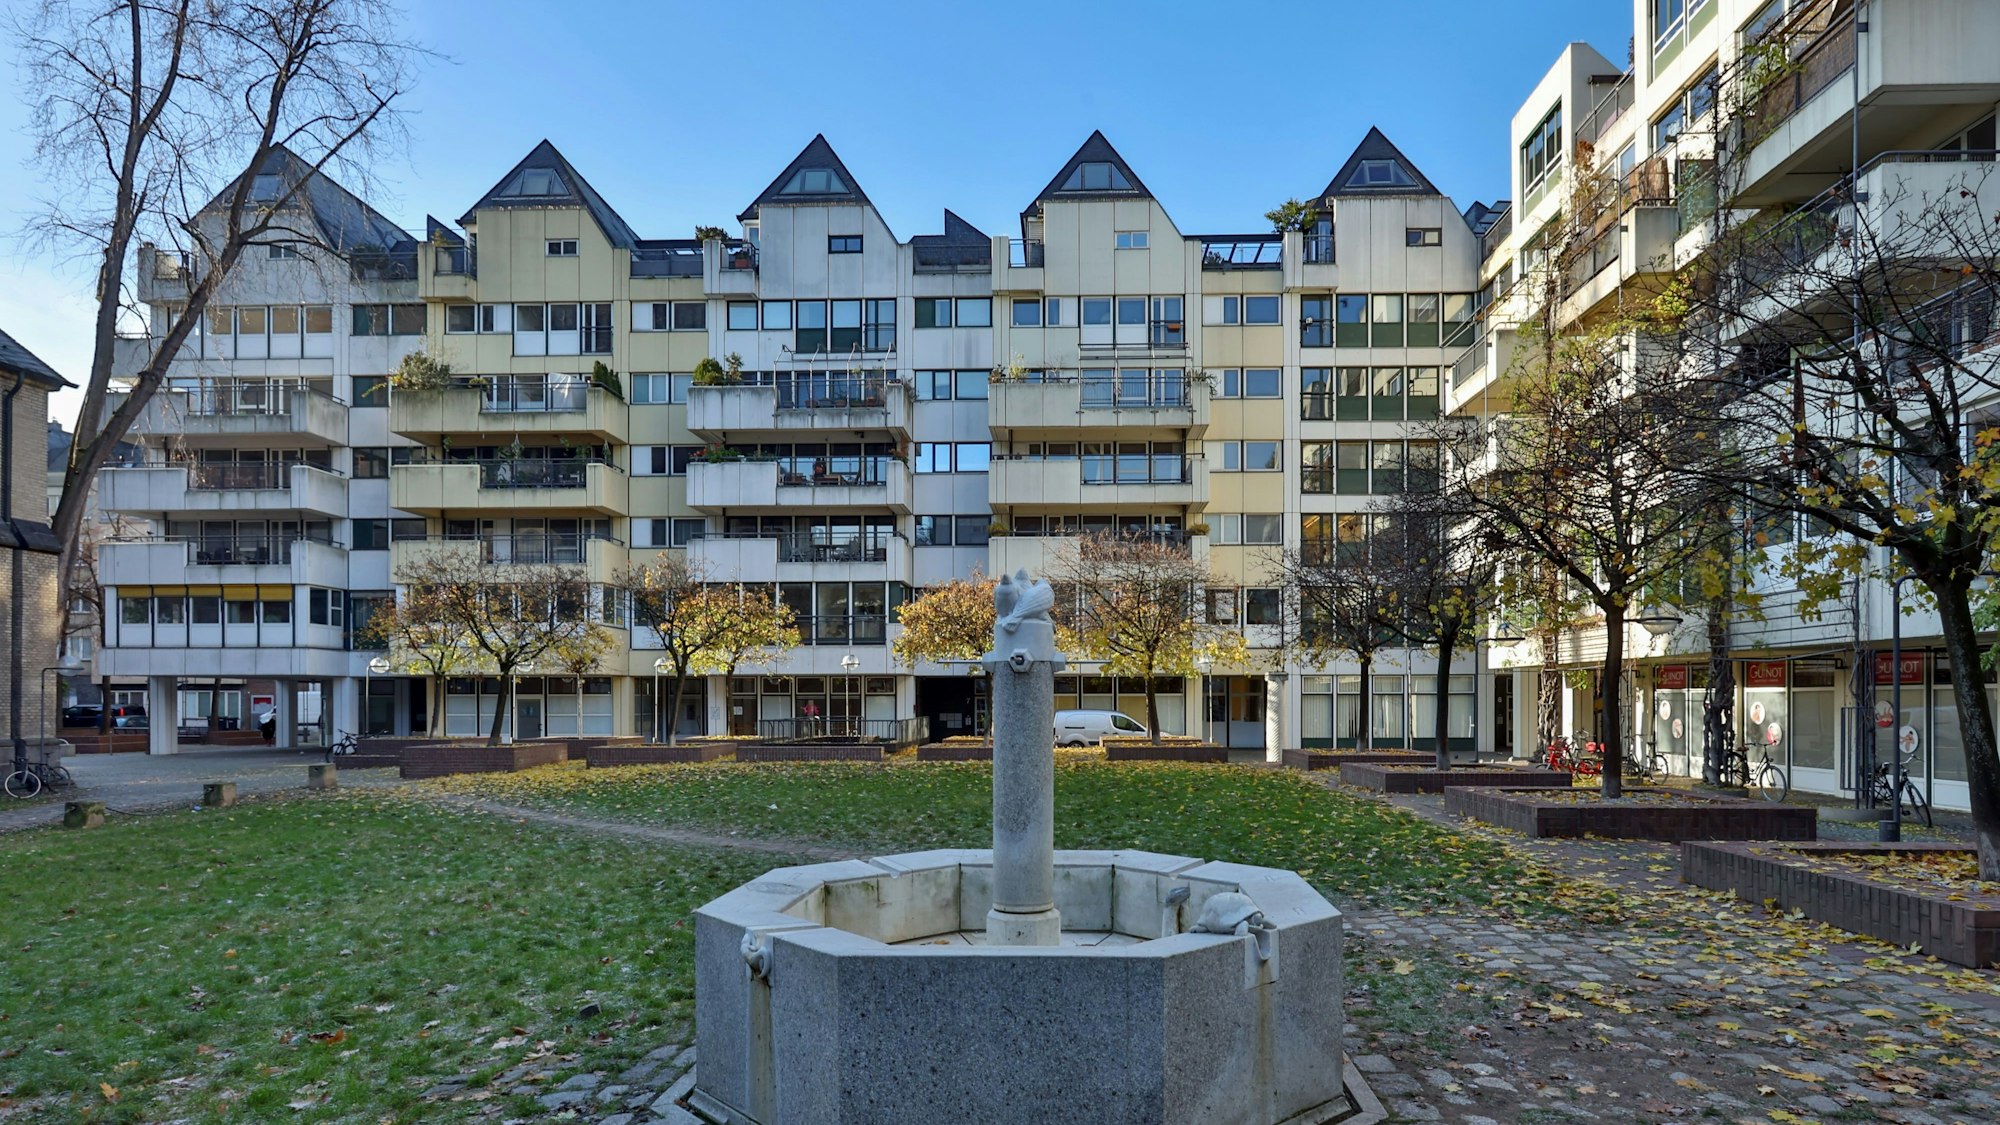 13.12.2022
Köln:
Die Wohnbebauung an Groß St. Martin (Quartier um Groß Sankt Martin) wurde in den 1970er Jahren errichtet.
Foto: Martina Goyert



